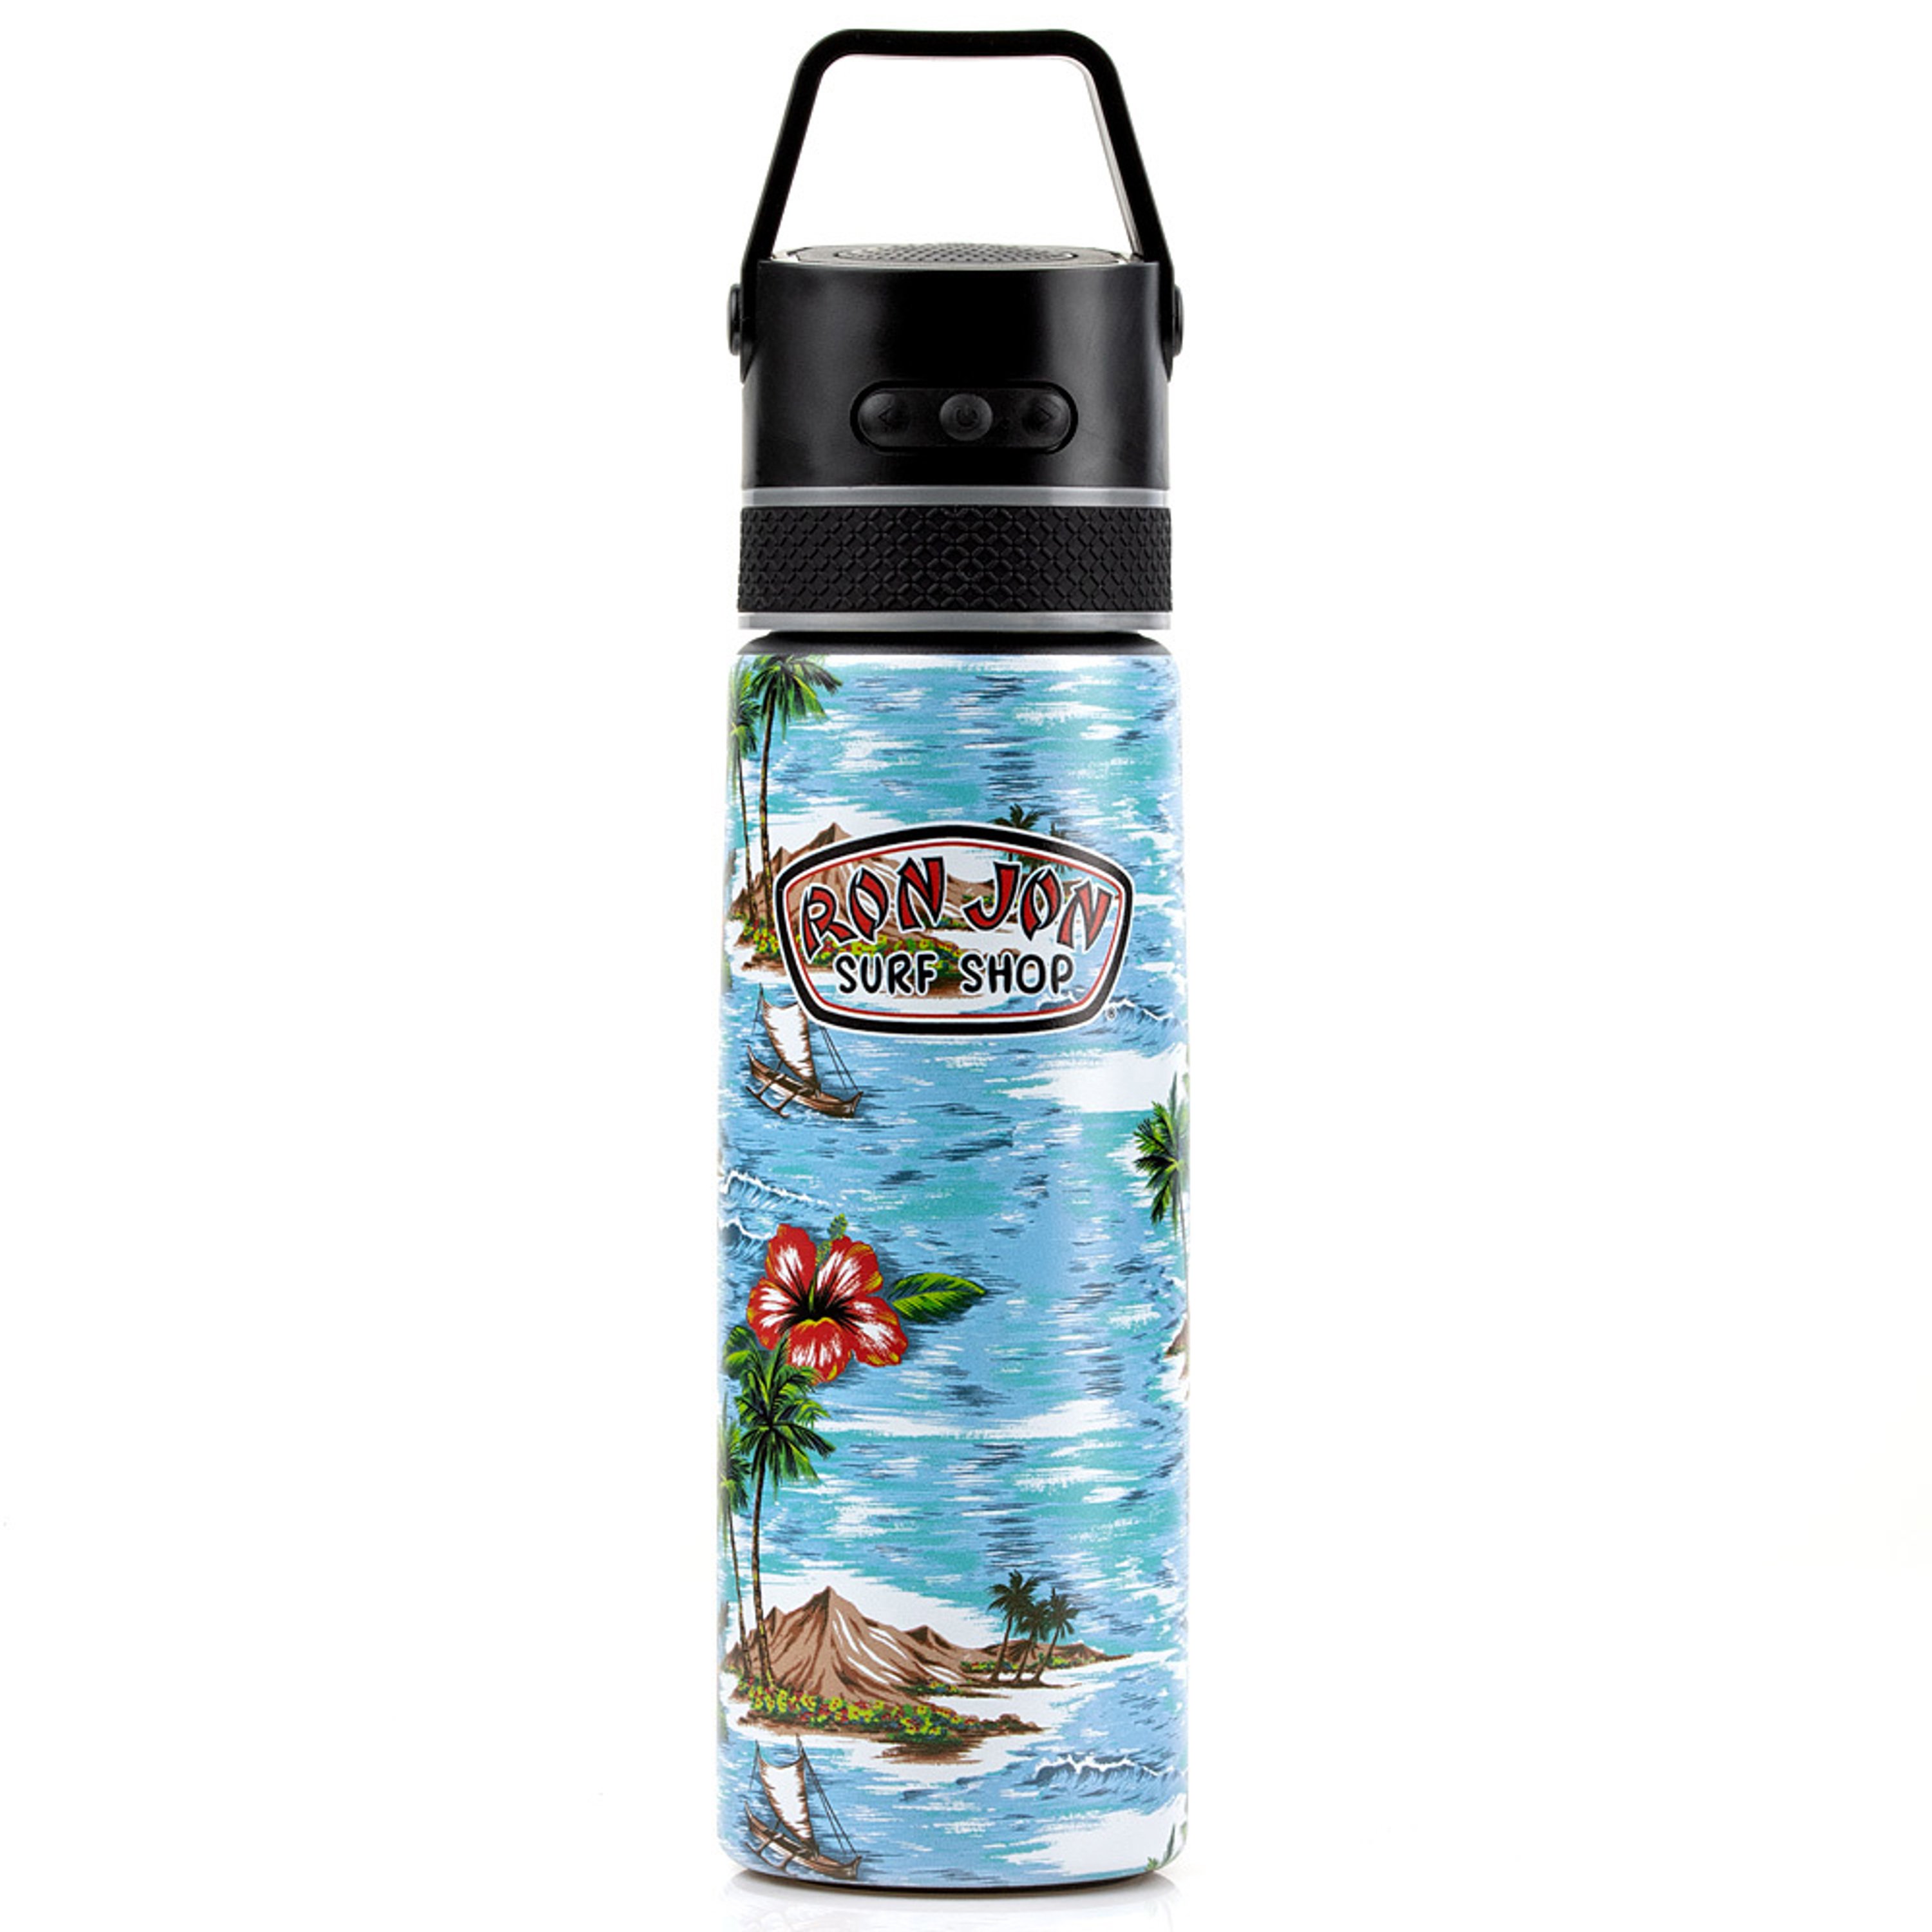 For Teen Boys Water Bottles - CafePress